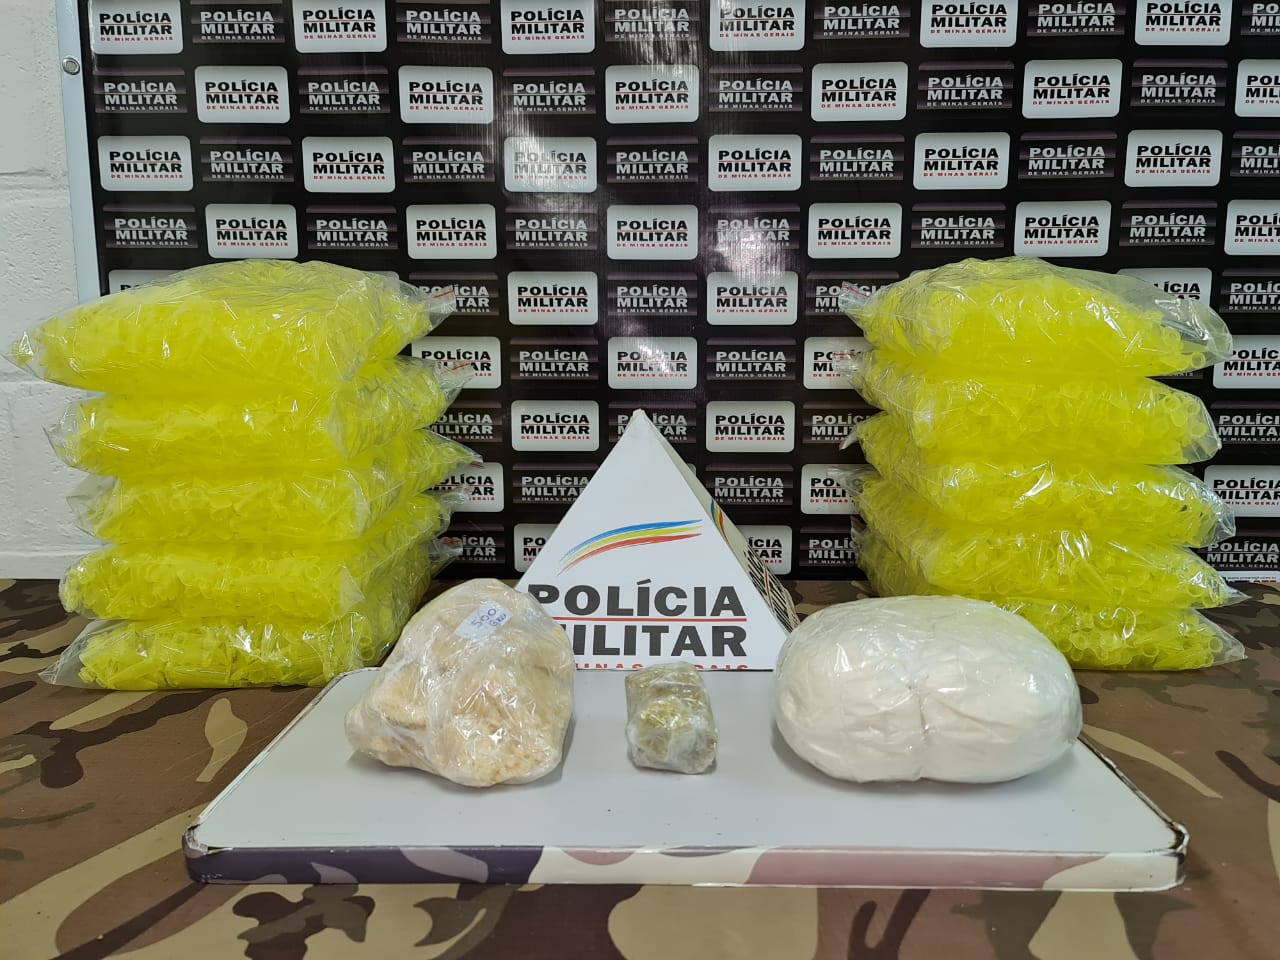 Juiz de  Fora: polícia apreende 1 Kg de cocaína e 600 gramas de crack no bairro Jardim Natal